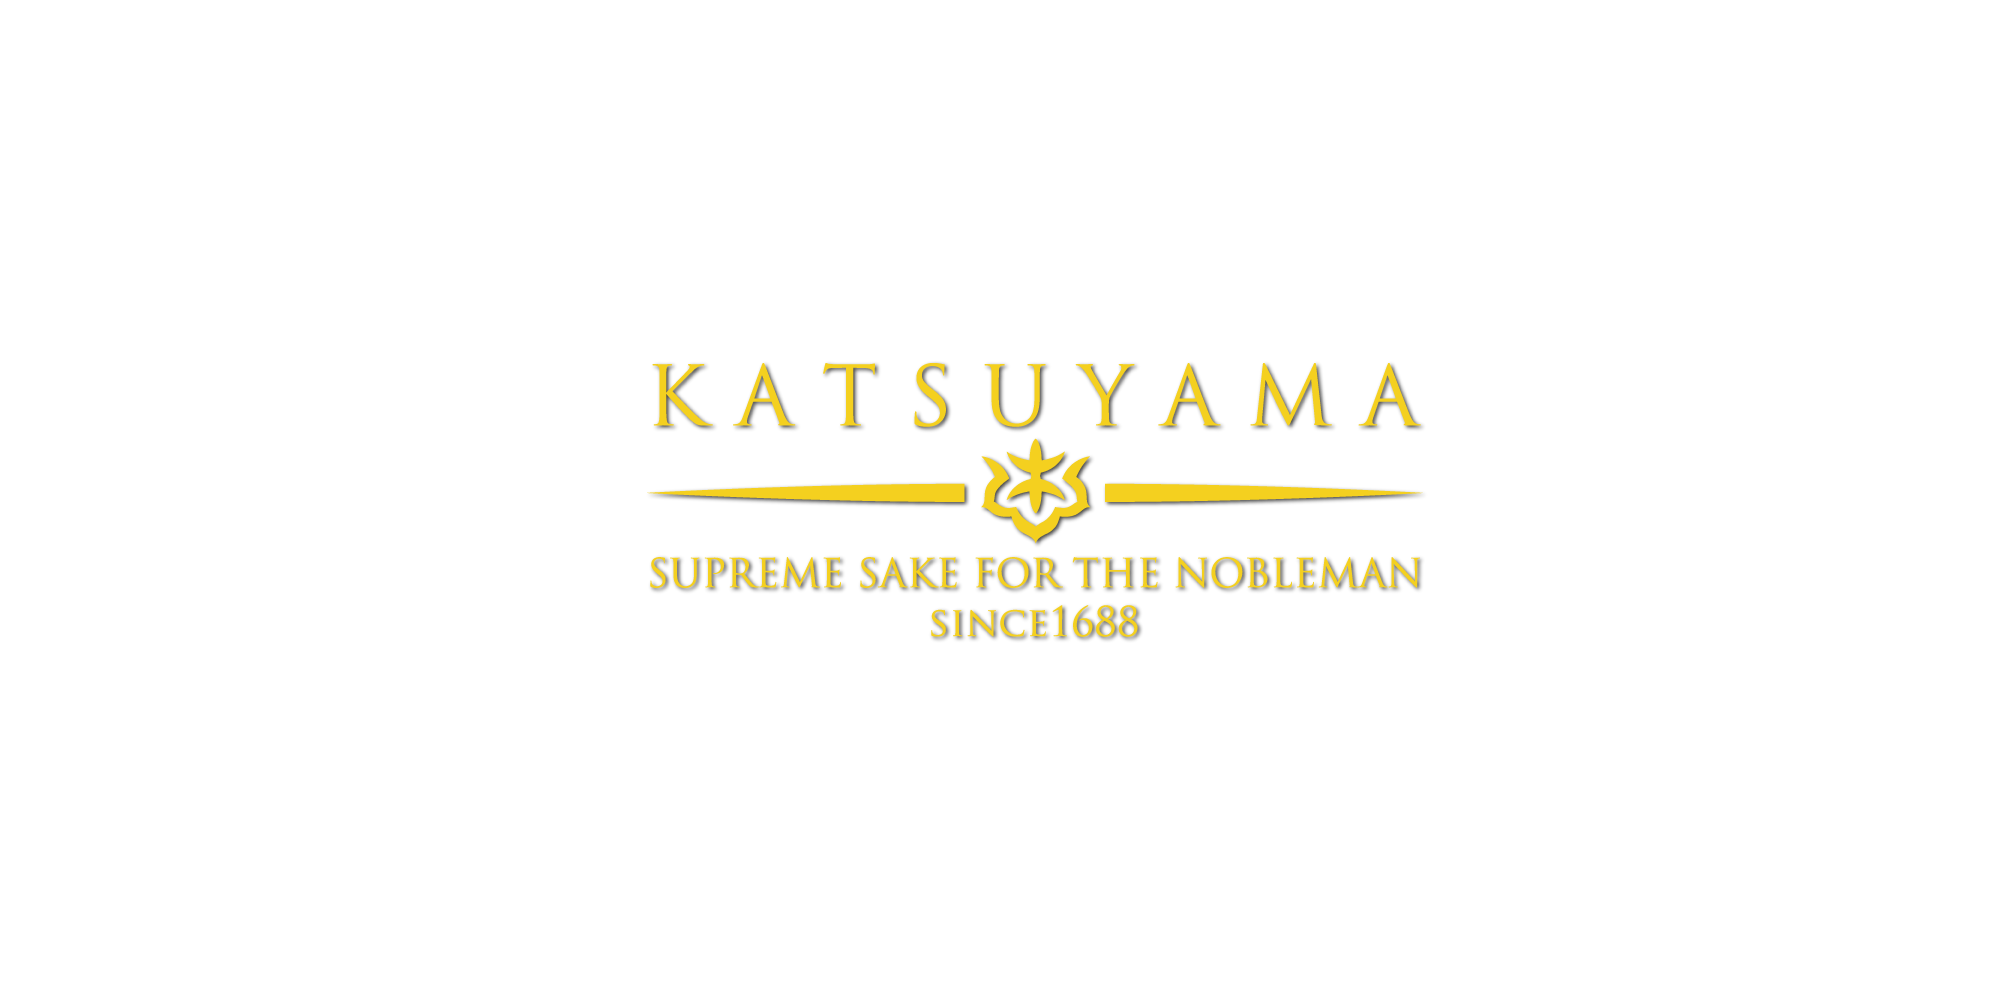 KATSUYAMA: SUPREME SAKE FOR THE NOBLEMAN SINCE1688